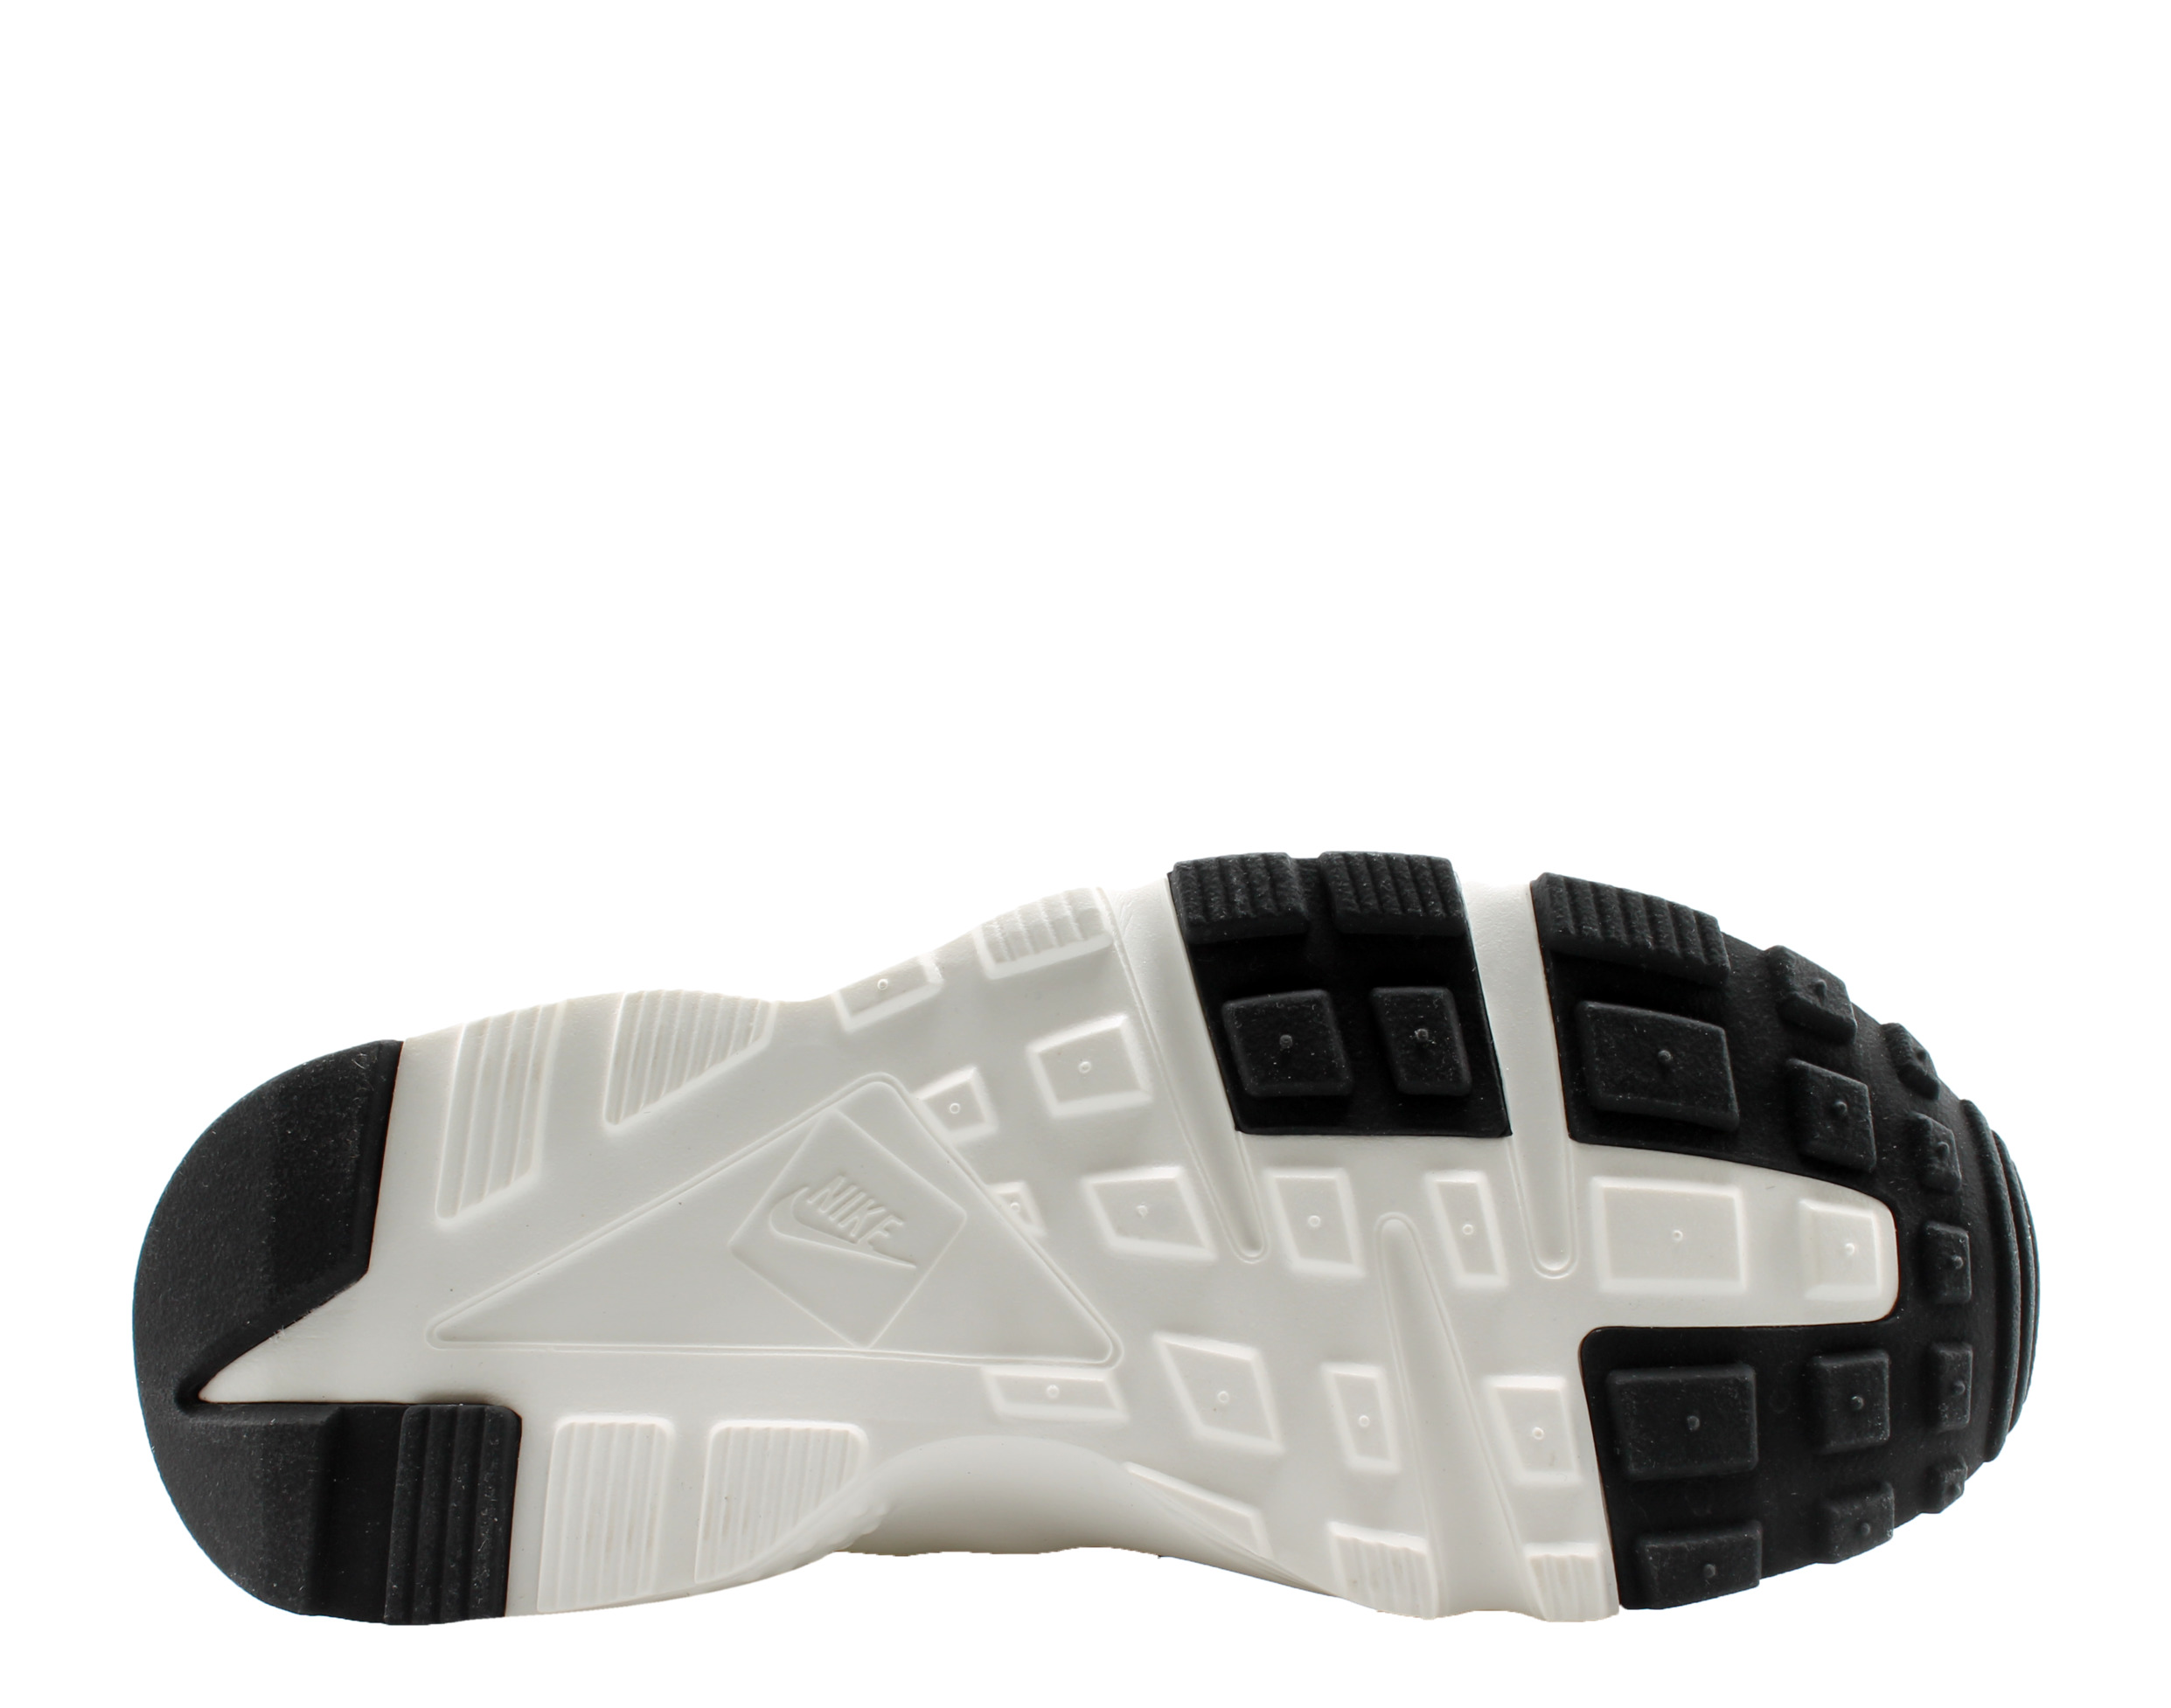 Nike Huarache Run (GS) Big Kids Running Shoes Size 5 - image 5 of 6